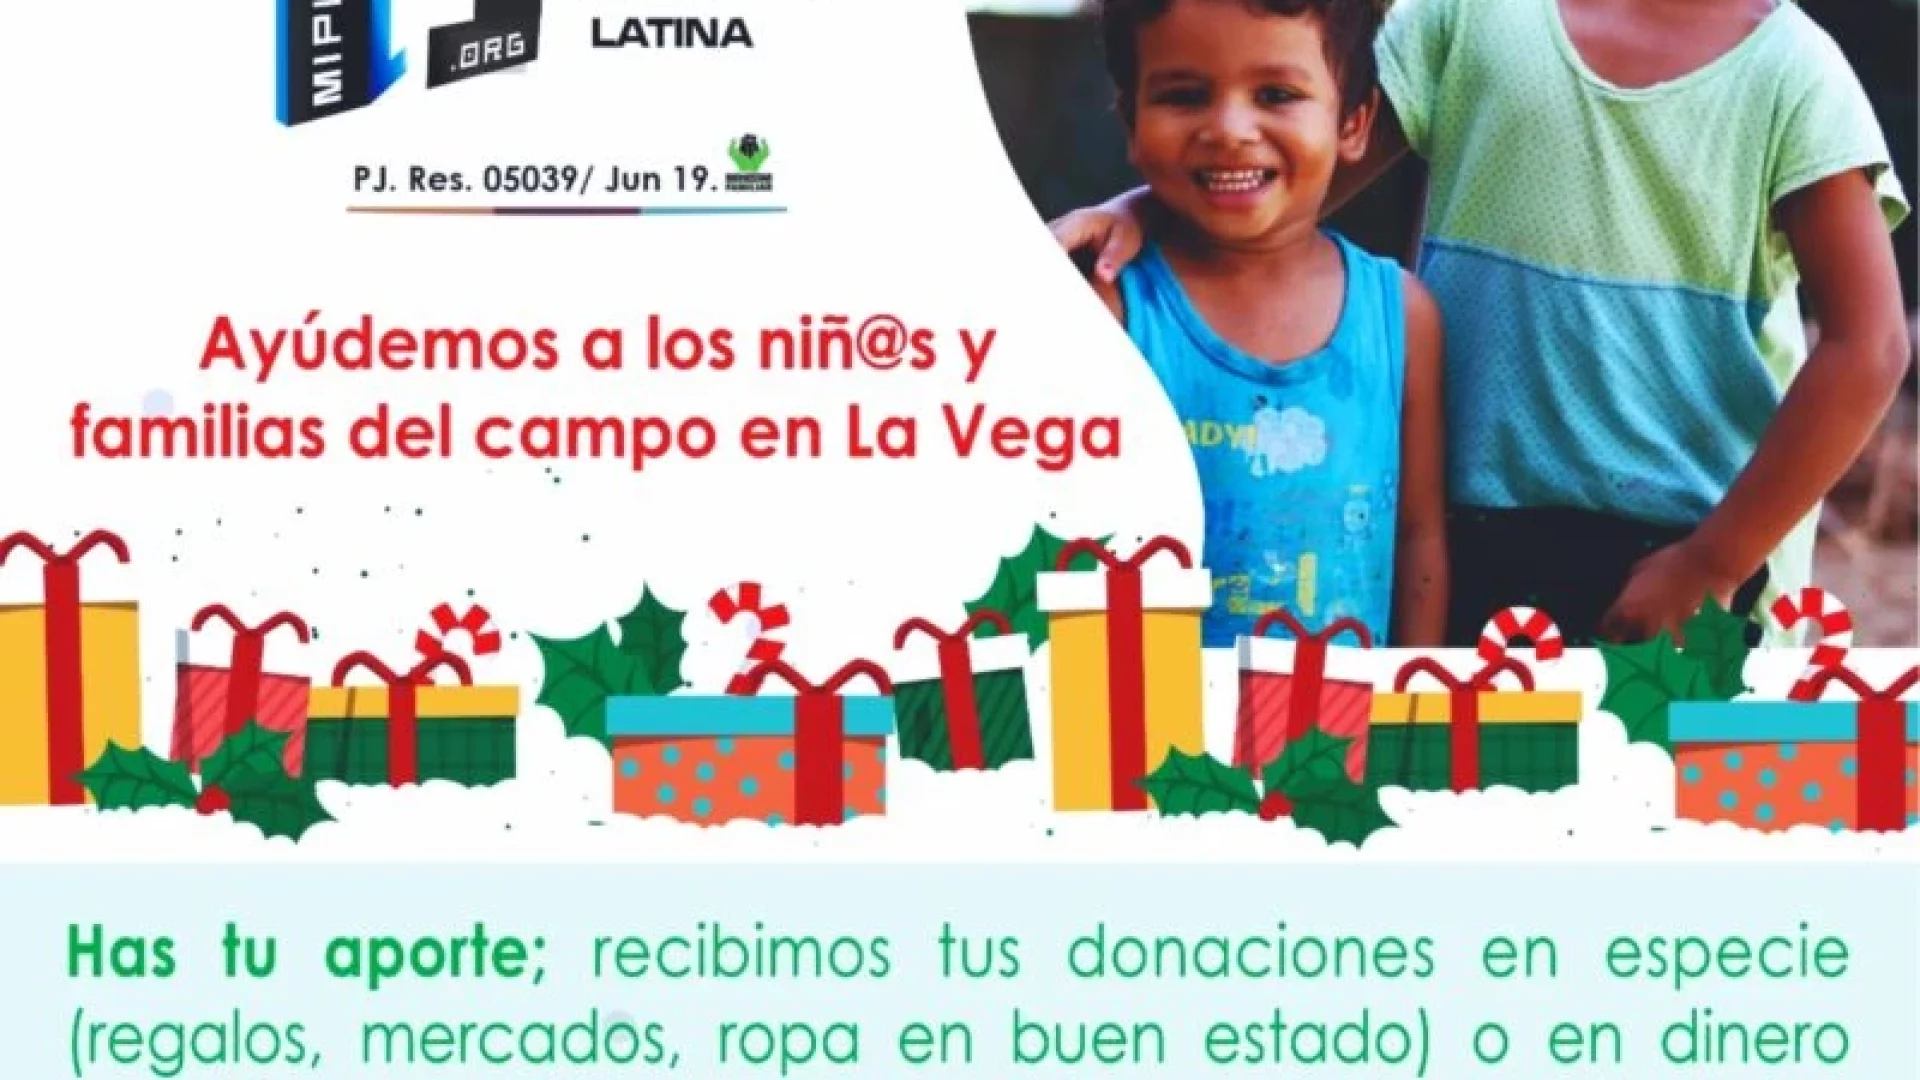 ¿Quiere ayudar y donar regalos para las familias y niños del campo en La Vega durante esta navidad?